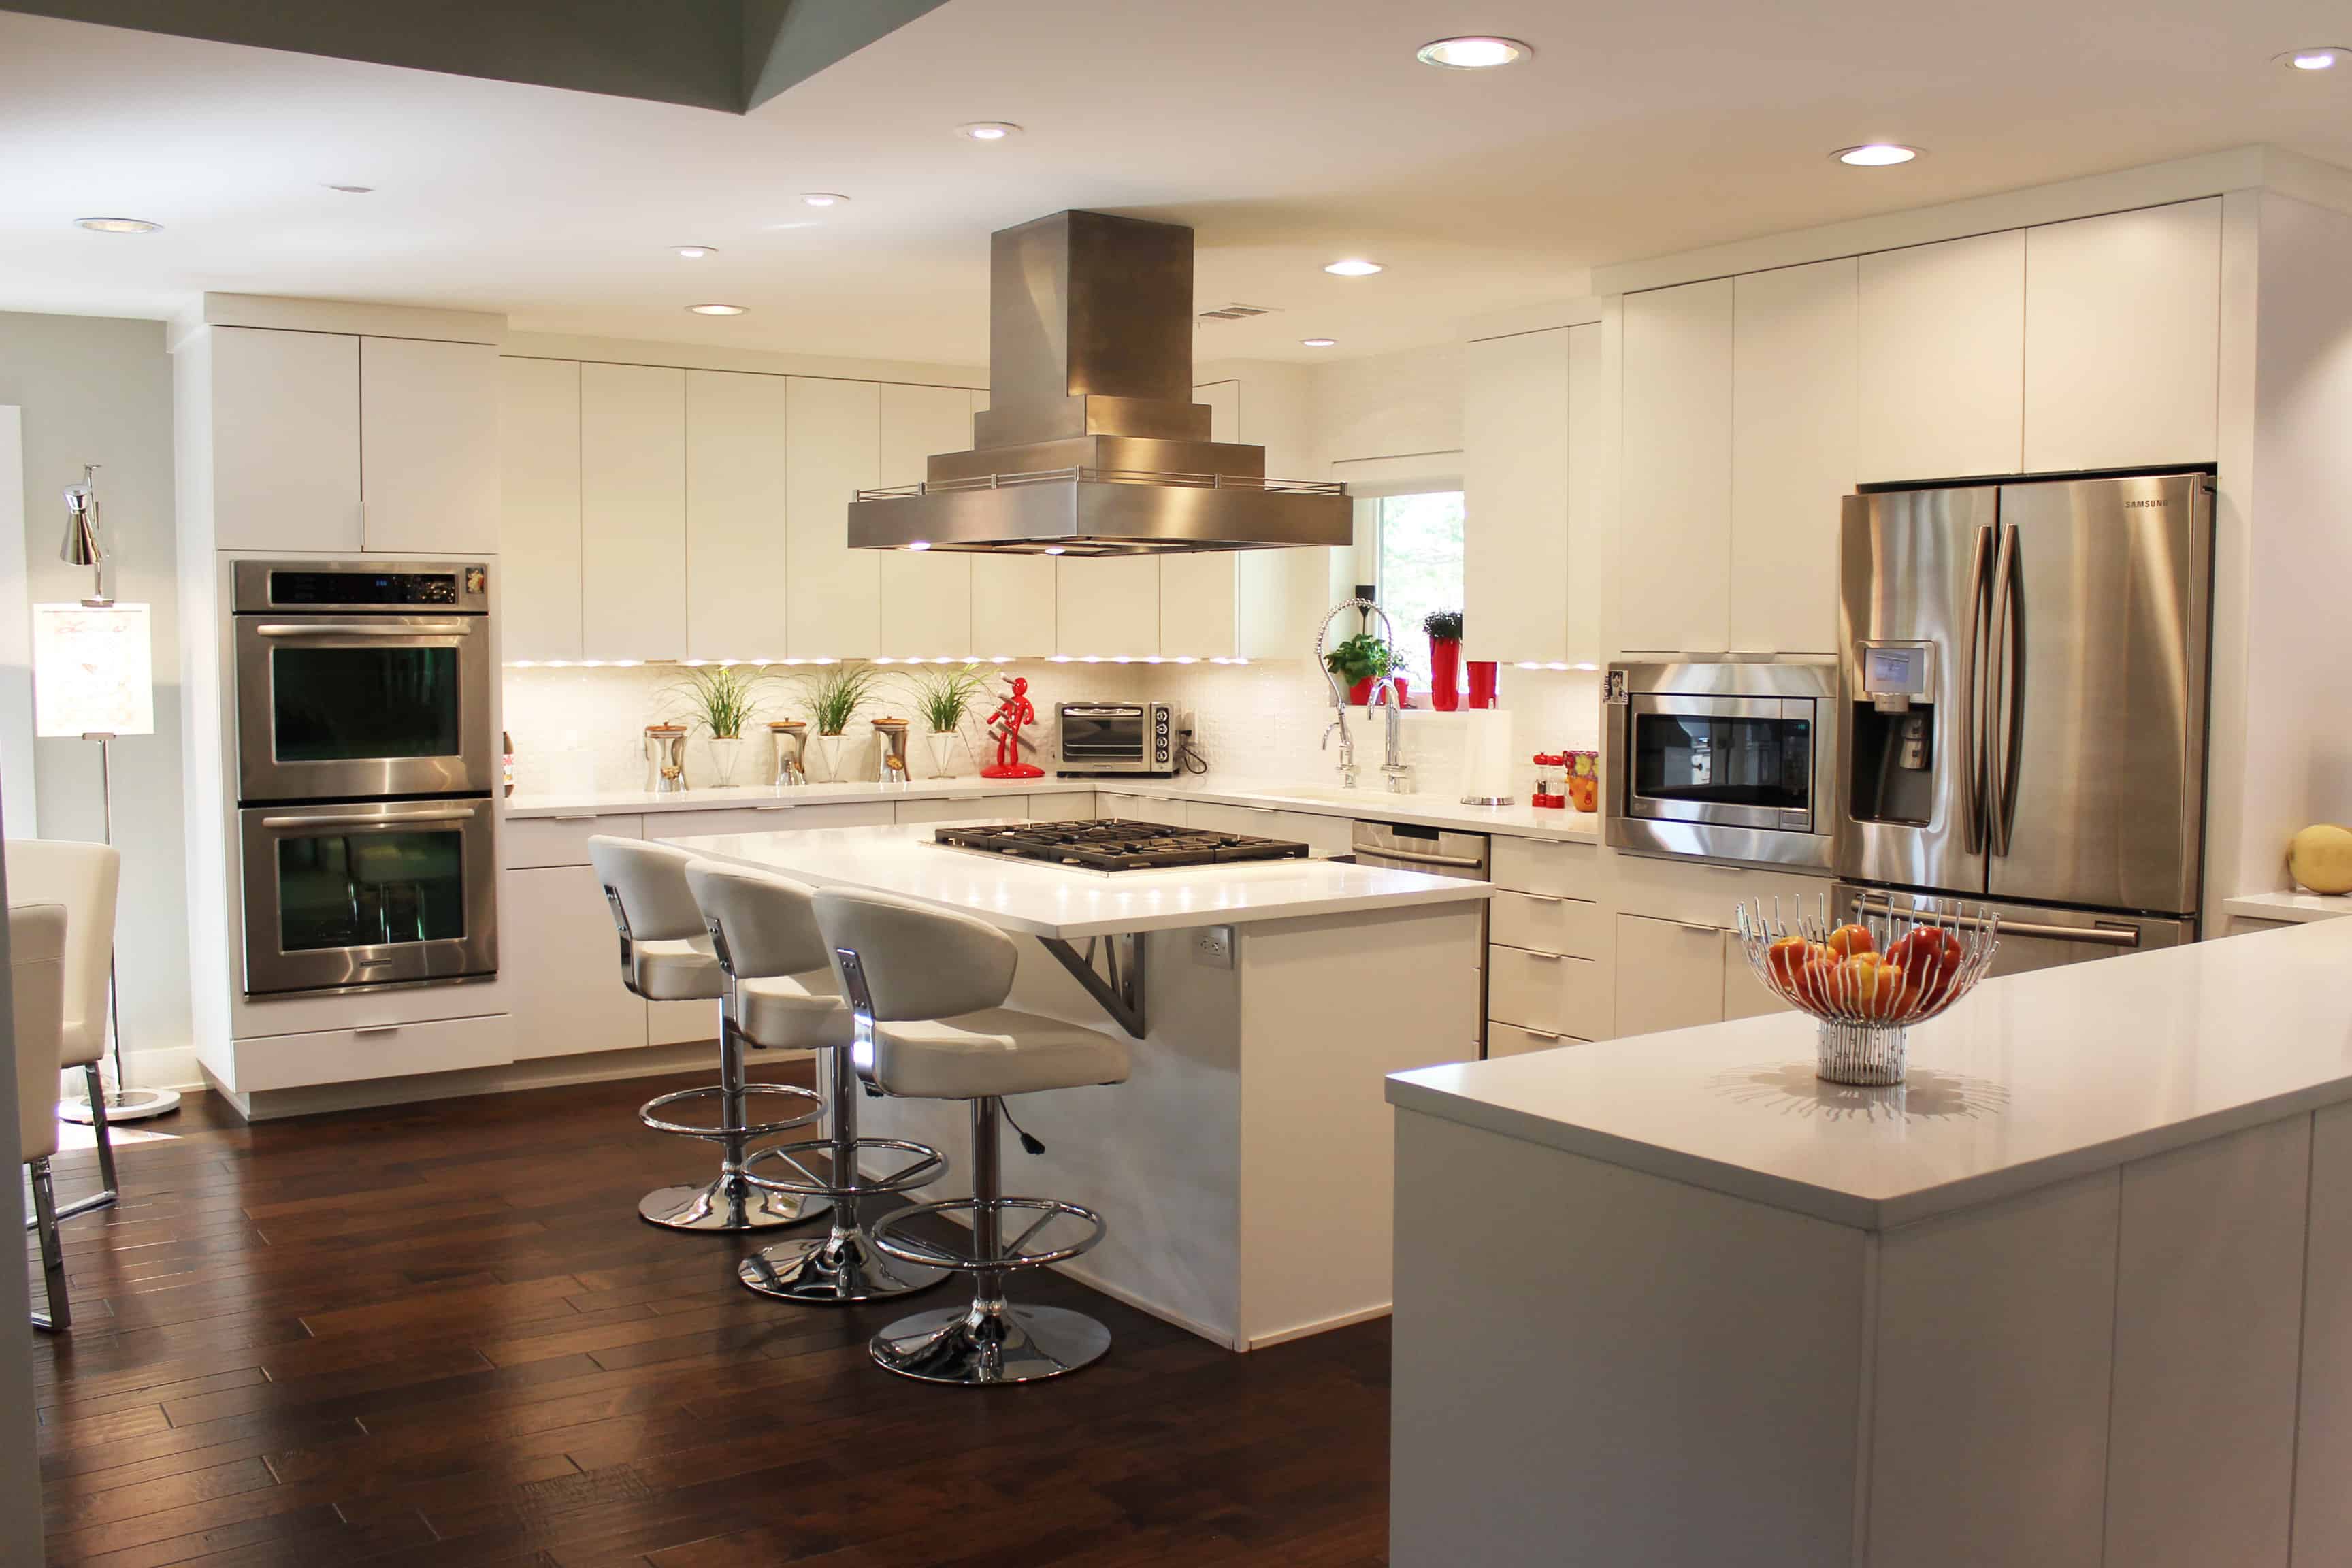 Dallas kitchen remodel white kitchen -hpd architecture + interiors